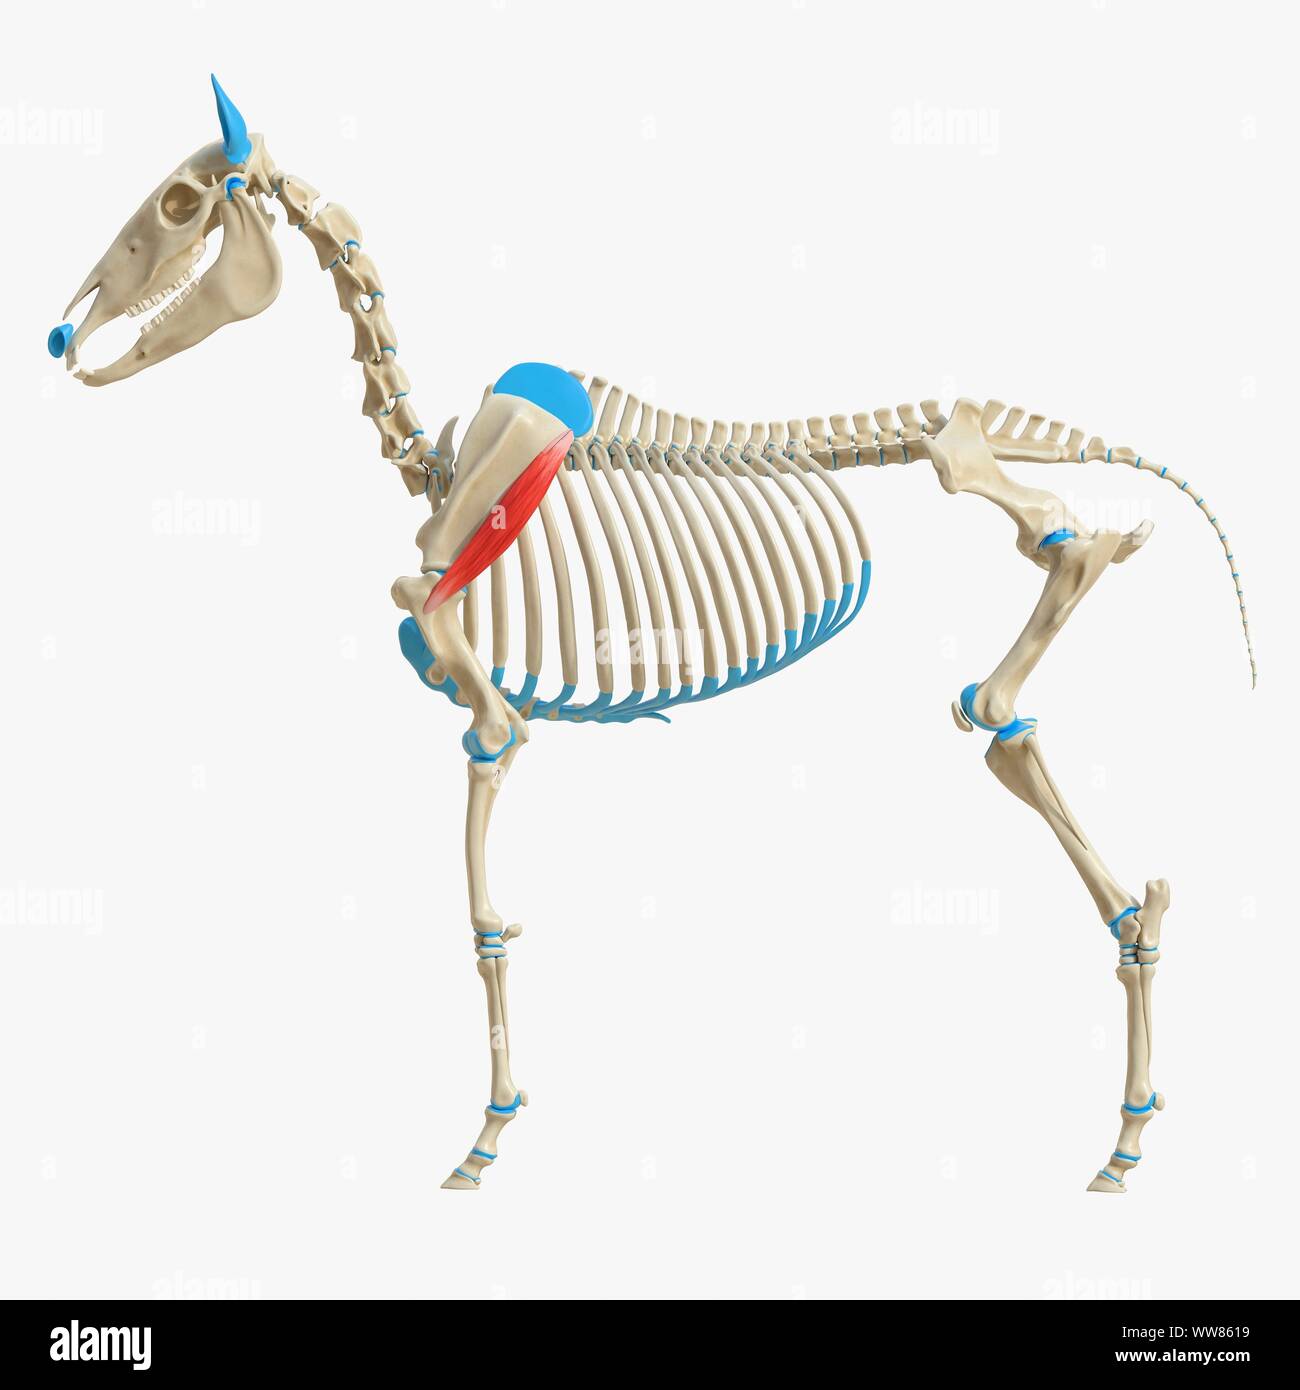 Horse deltoideus muscle, illustration Stock Photo